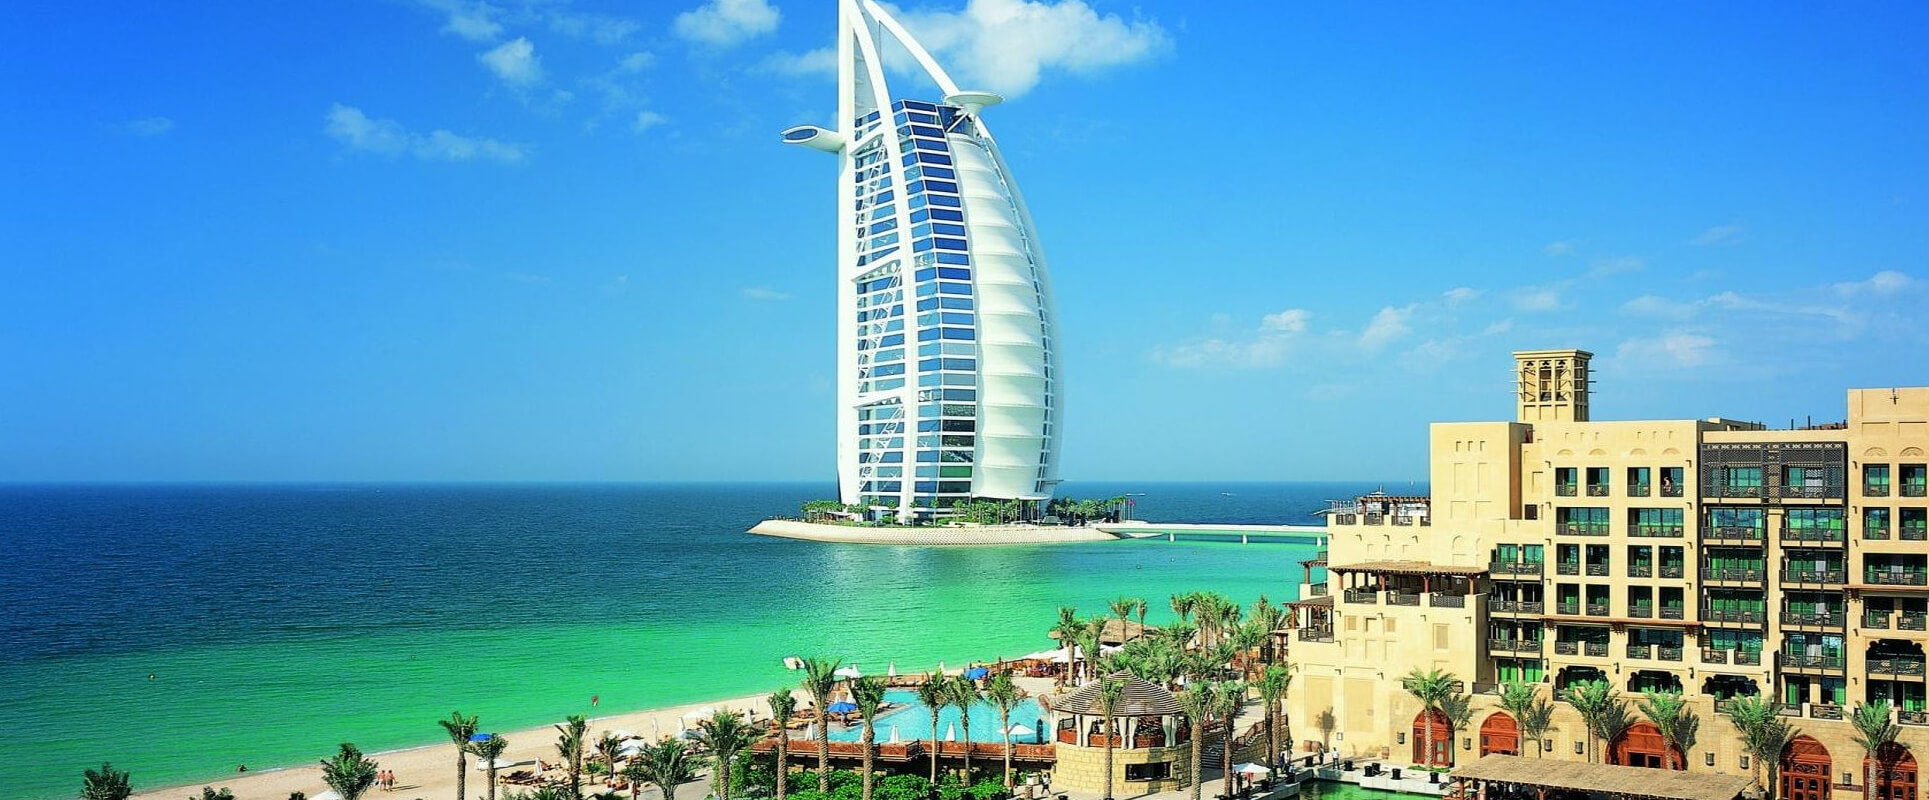 Dubai-city-tour-banner-top